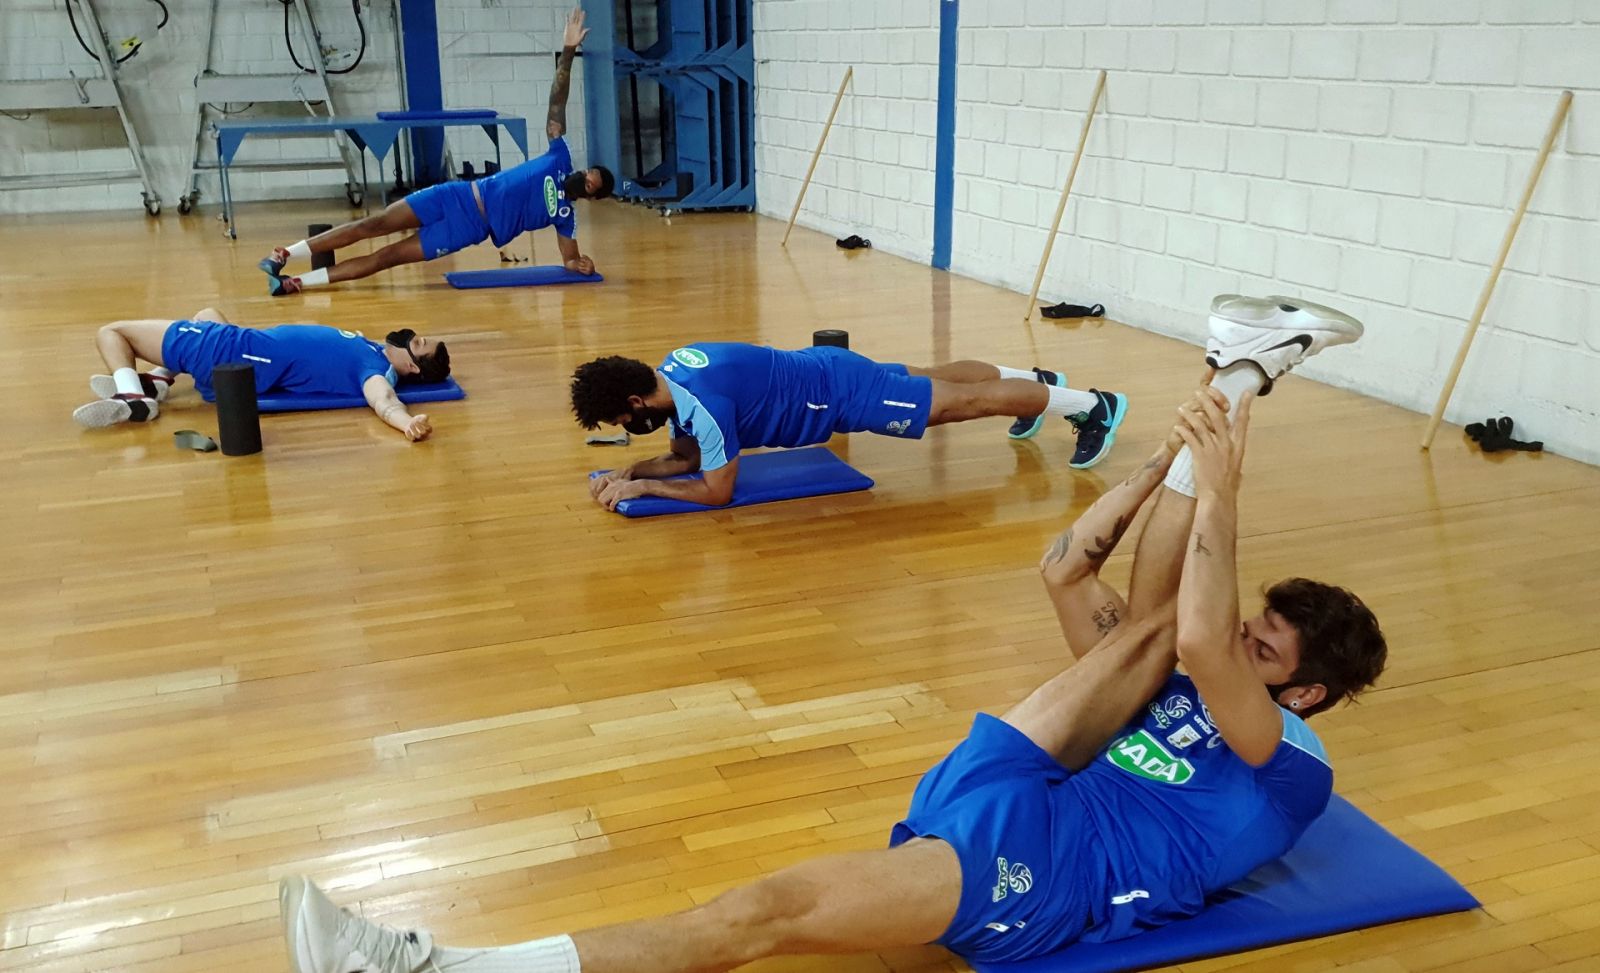 Cercado de protocolos, elenco do Sada Cruzeiro se apresenta e inicia a pré-temporada em BH